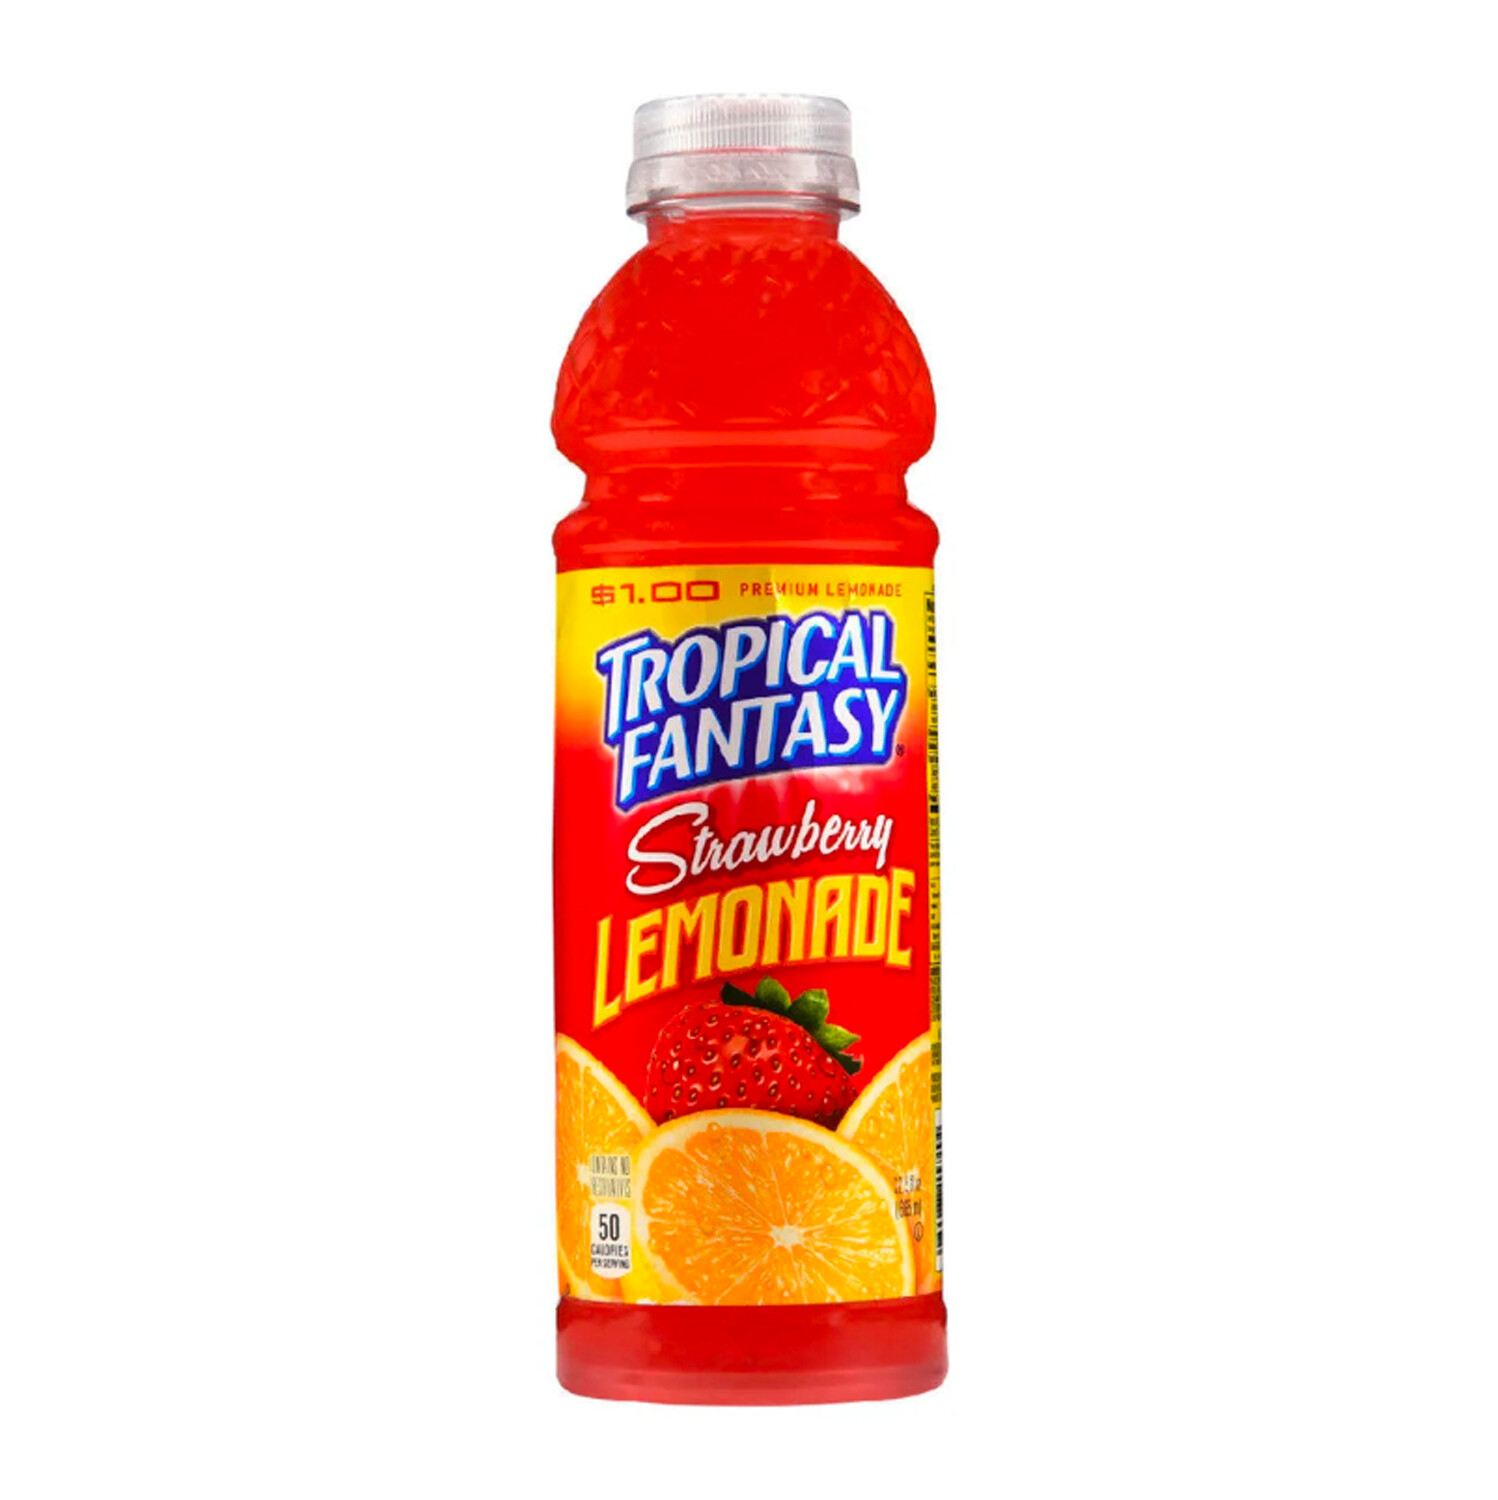 Tropical Fantasy Strawberry Lemonade